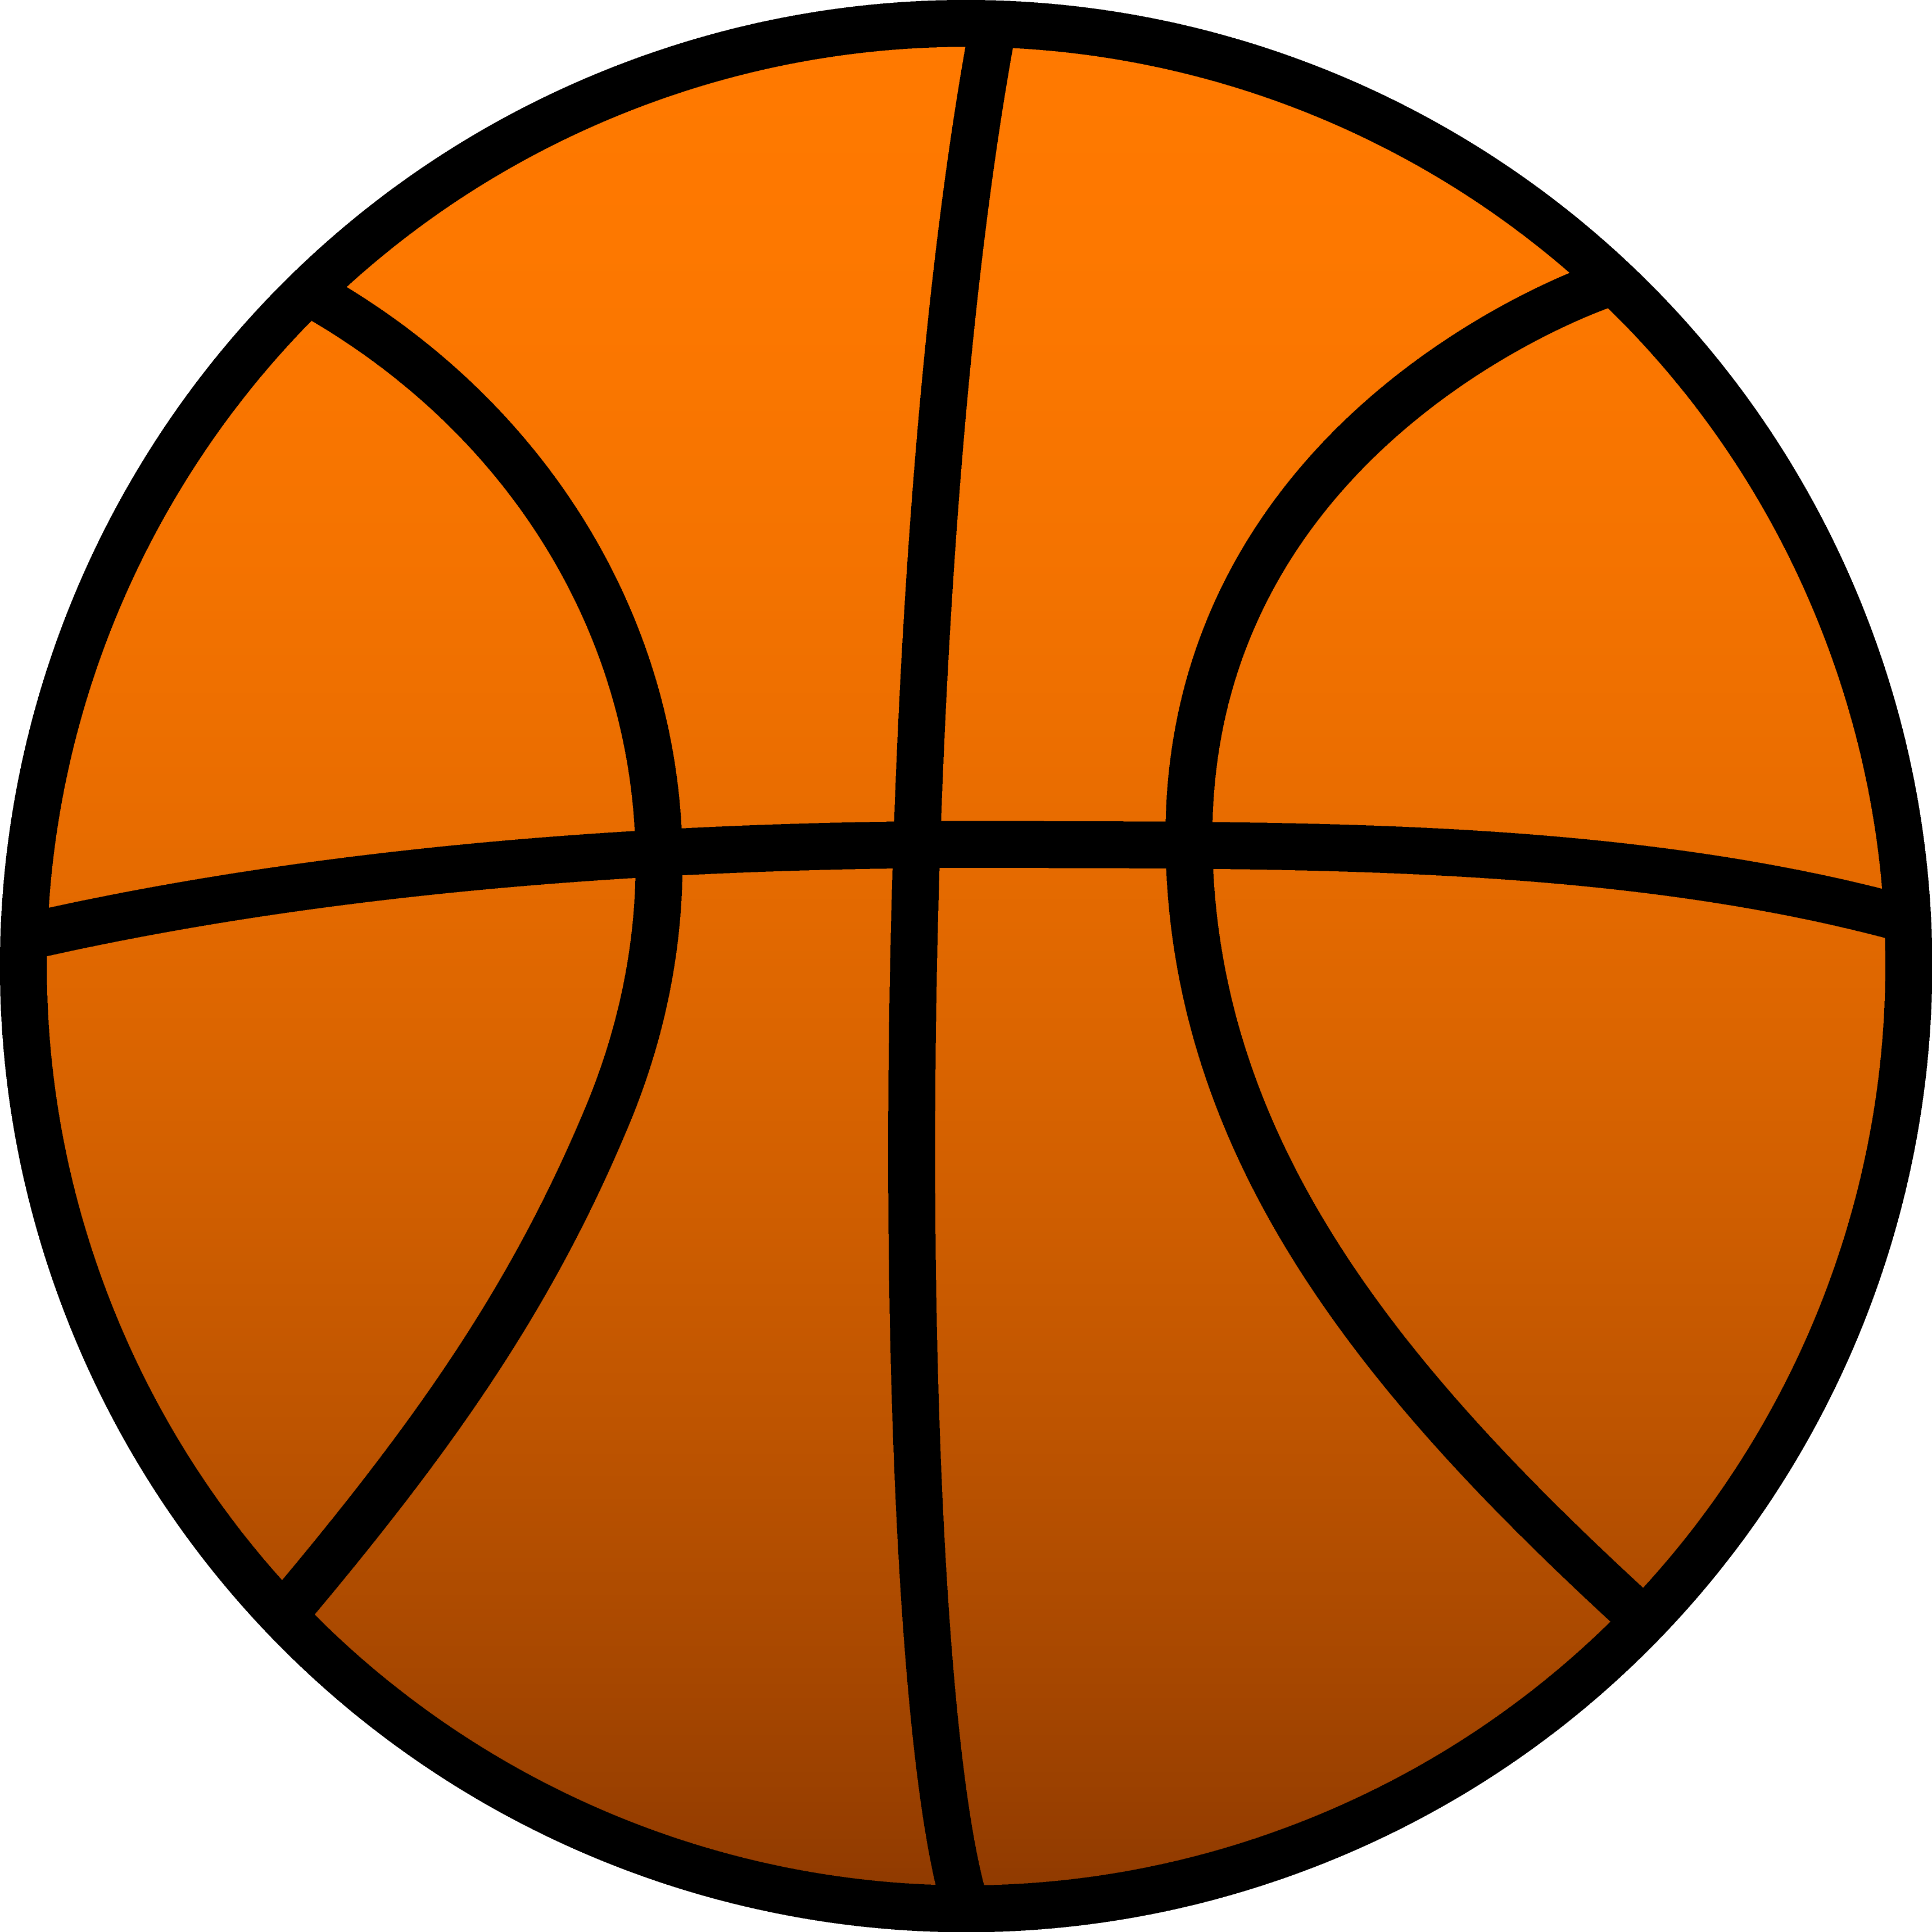 basketball_-_ball_5 clipart -